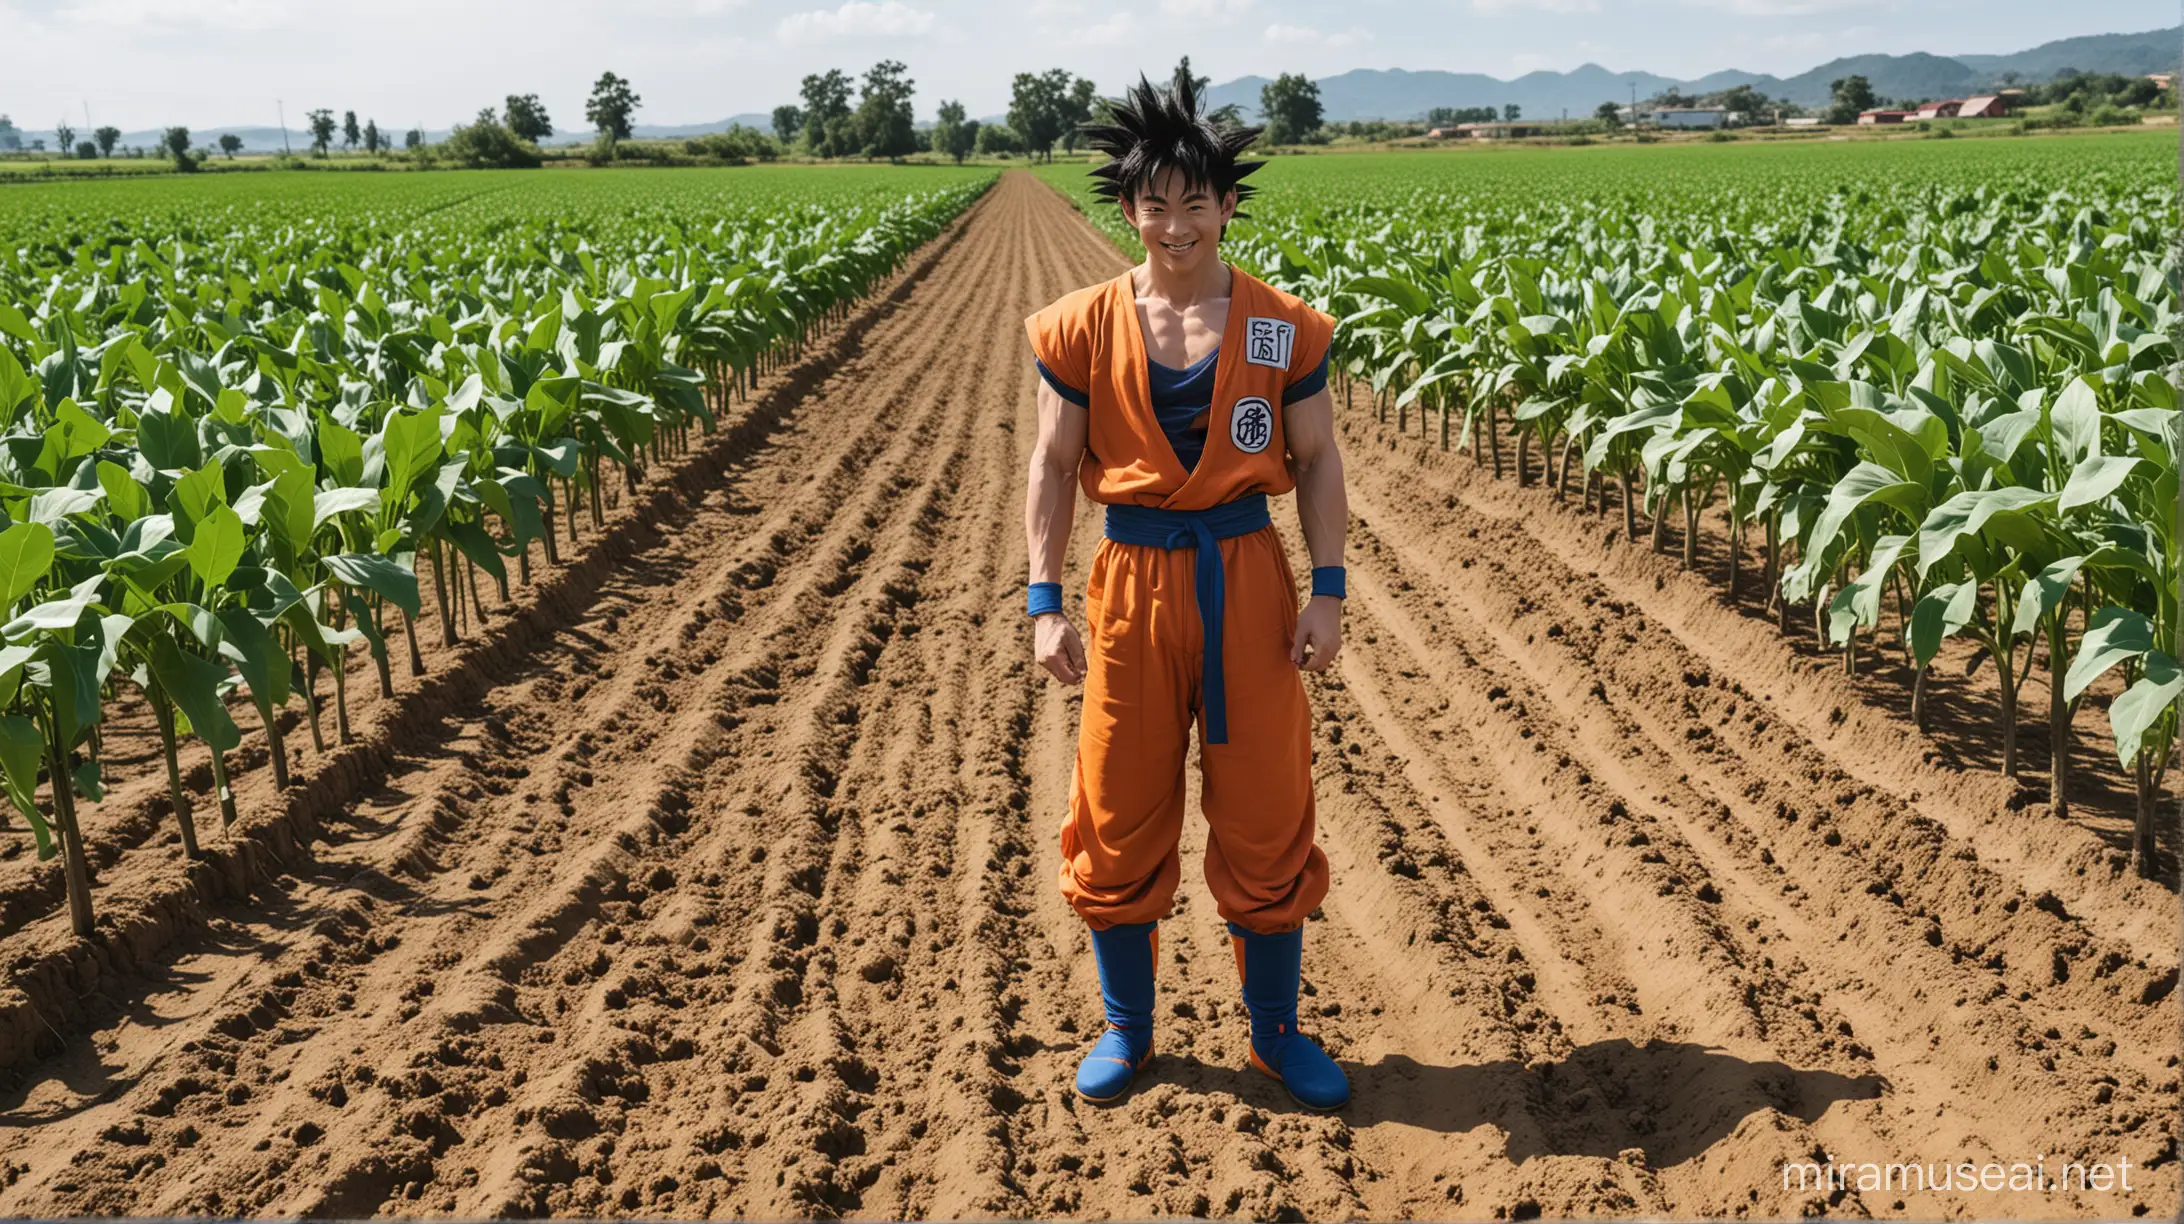 Goku growing crops in a farm, feeling happy.